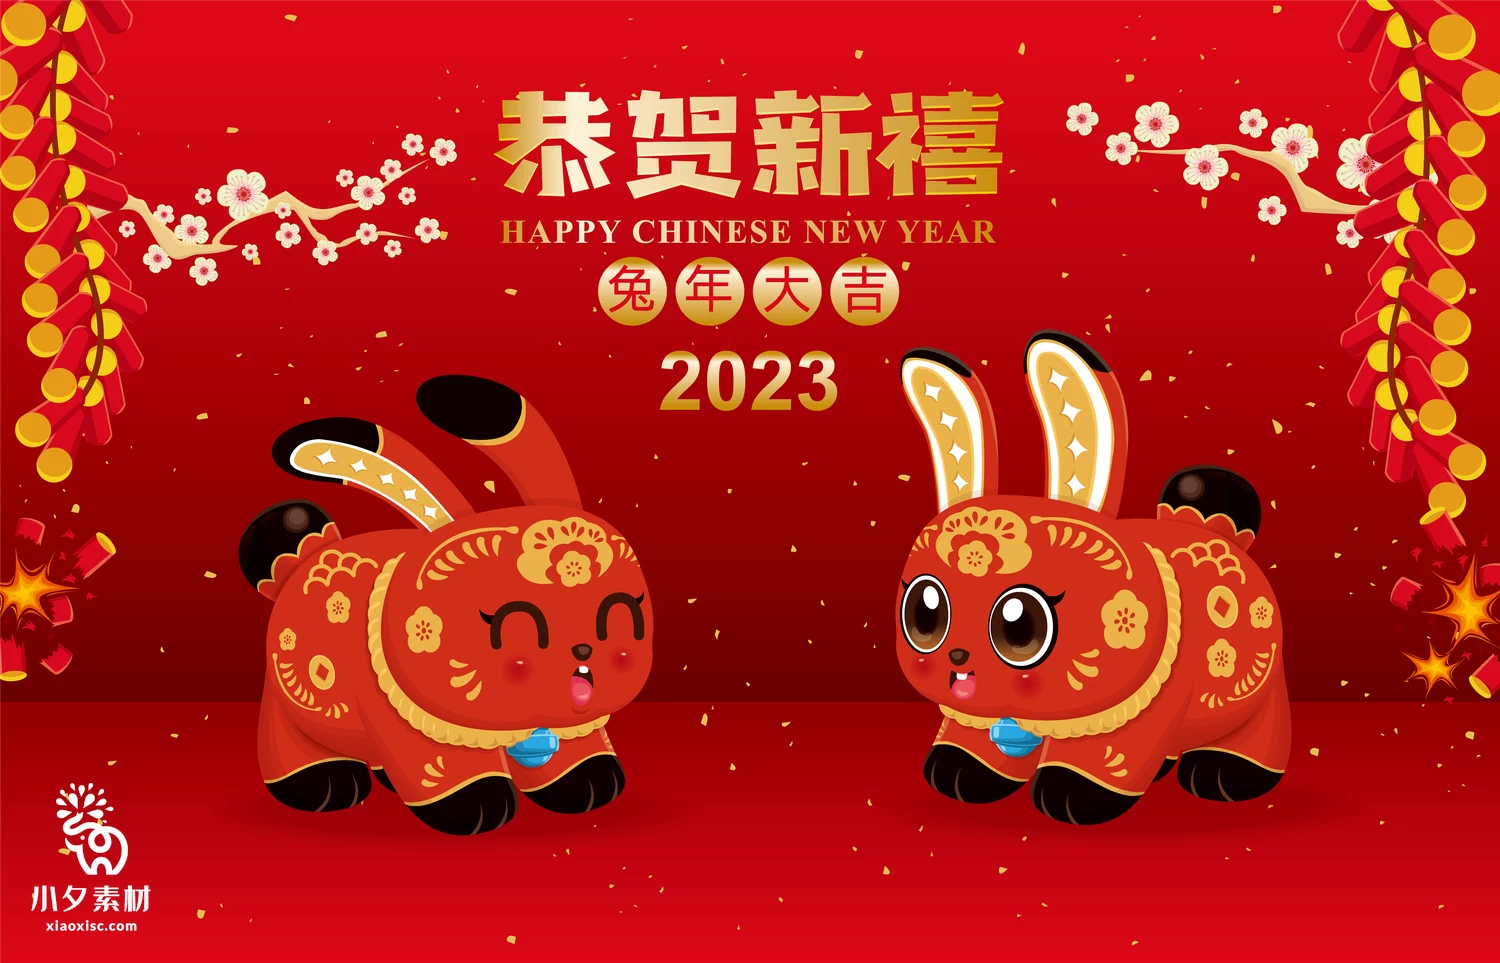 2023年兔年恭贺新春新年快乐喜庆节日宣传海报图片AI矢量设计素材【007】